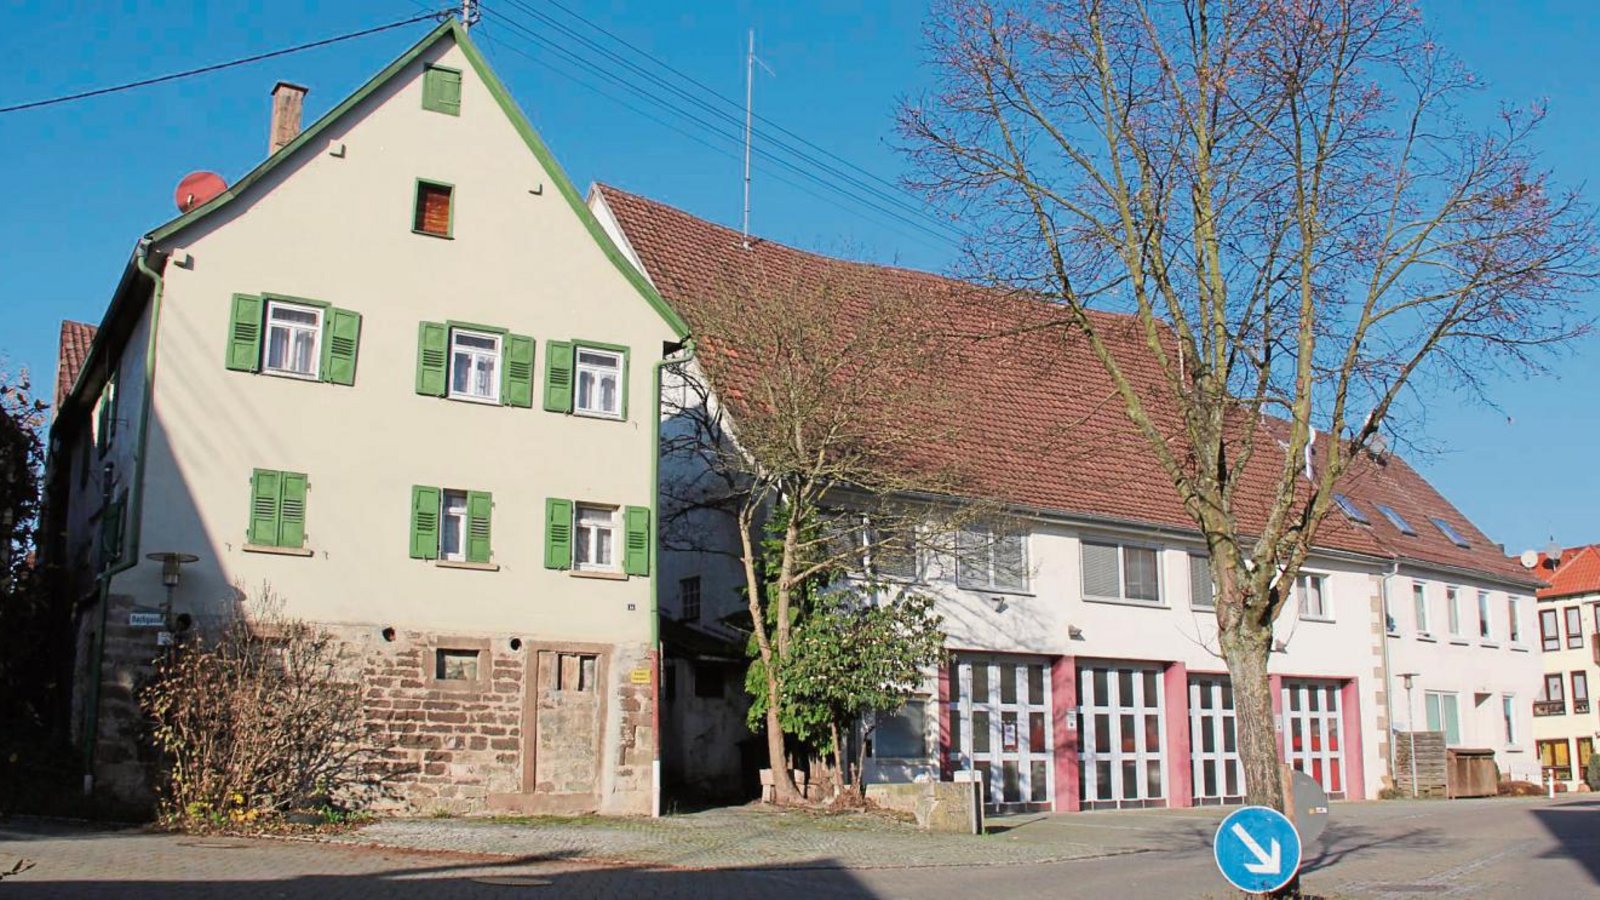 Die Gemeinde Sersheim möchte das Feuerwehrareal neugestalten und startet dafür einen städtebaulichen Ideenwettbewerb.  Fotos: Elsässer